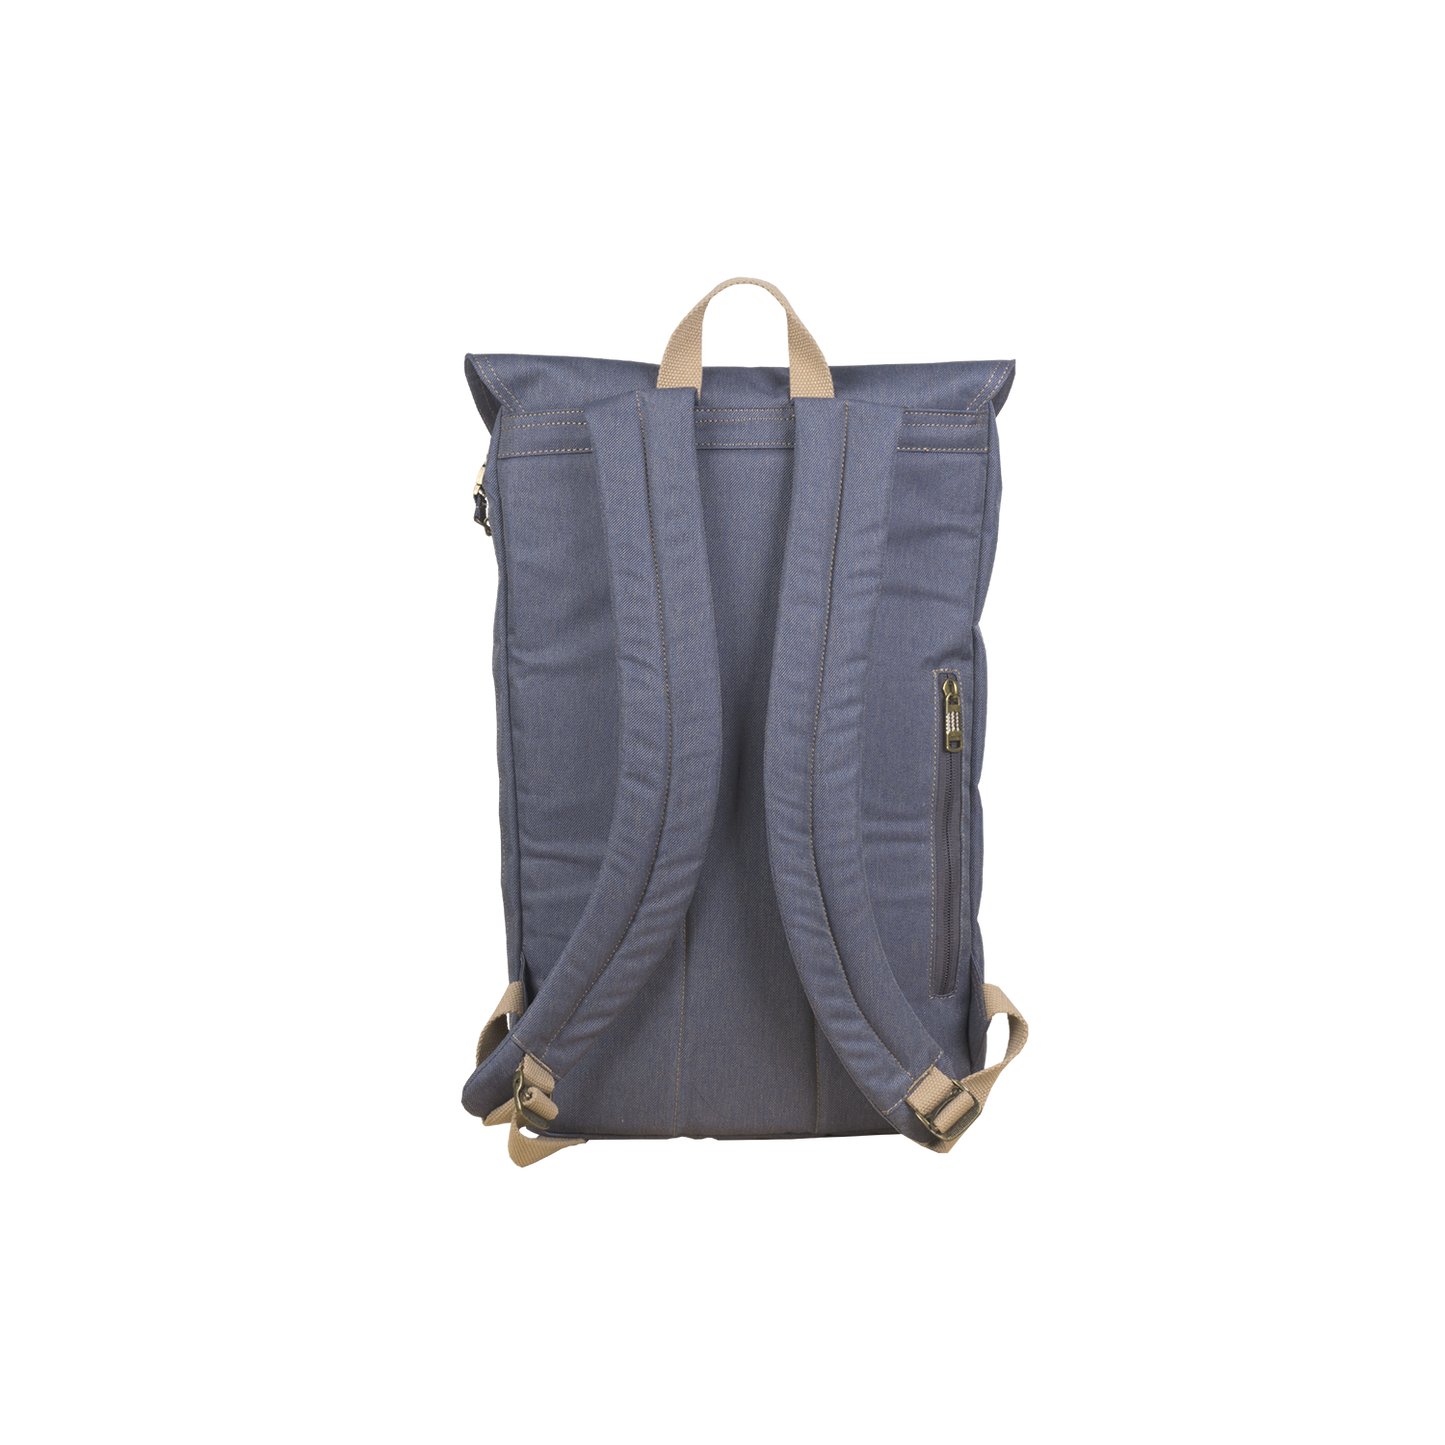 Plato Backpack